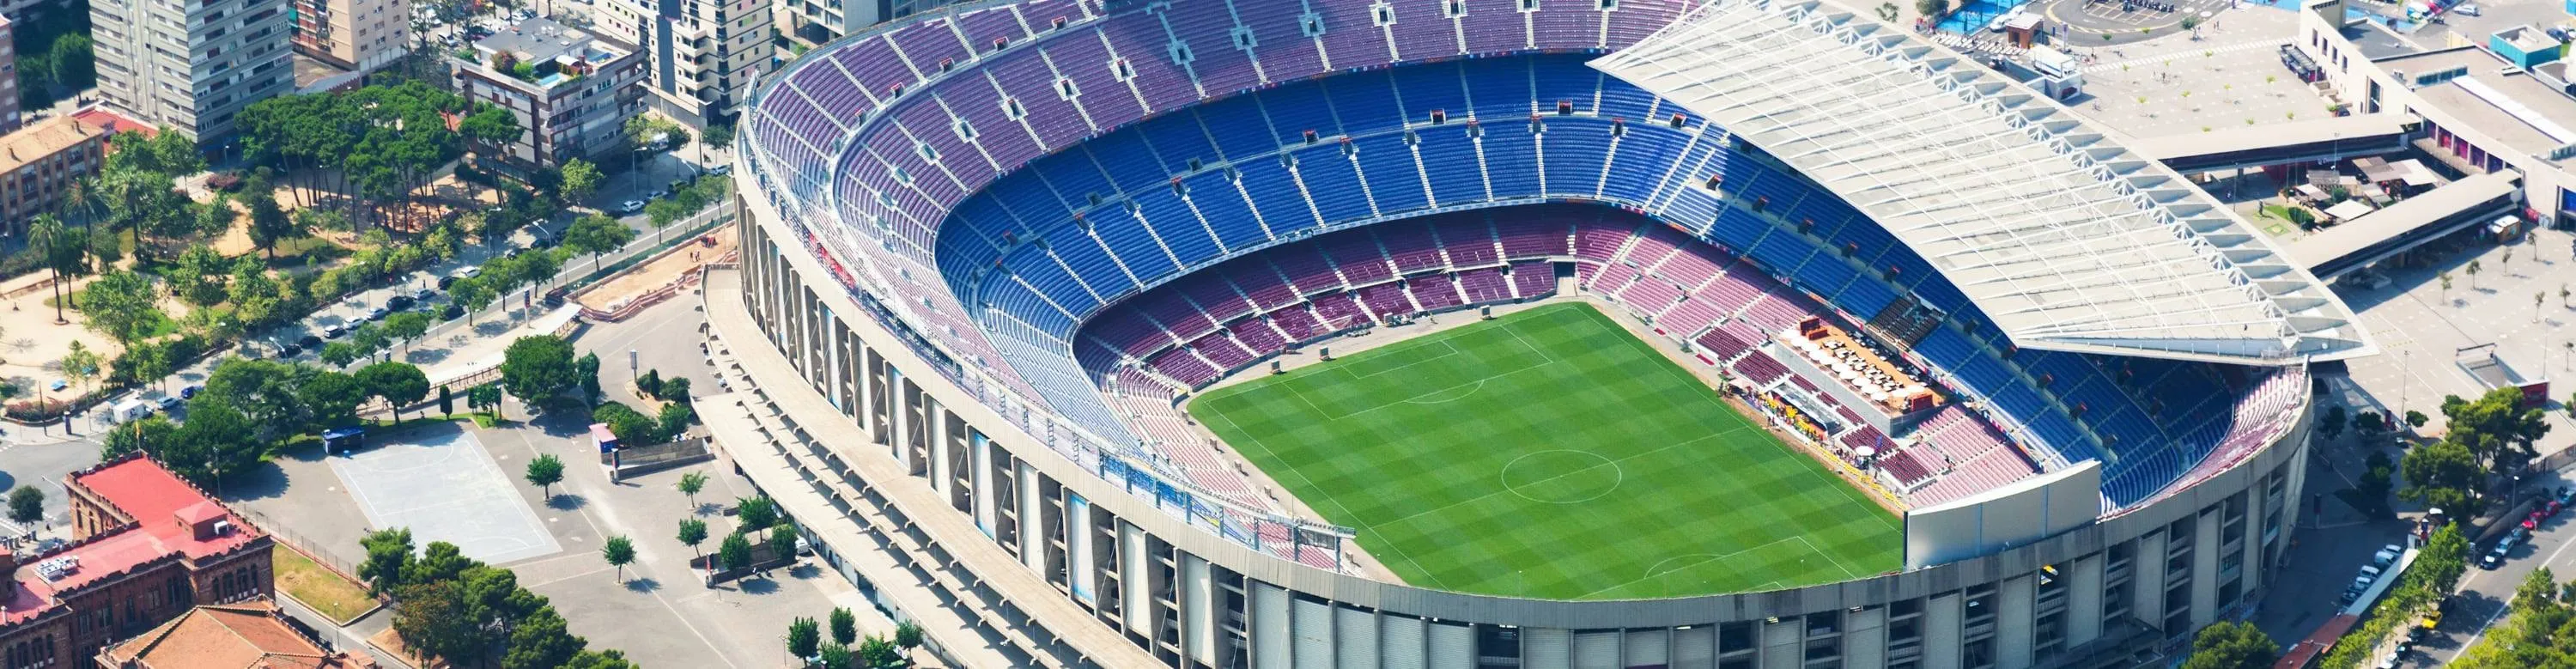 Camp Nou - Euroopa suurim jalgpallistaadion - ReisiGuru.ee